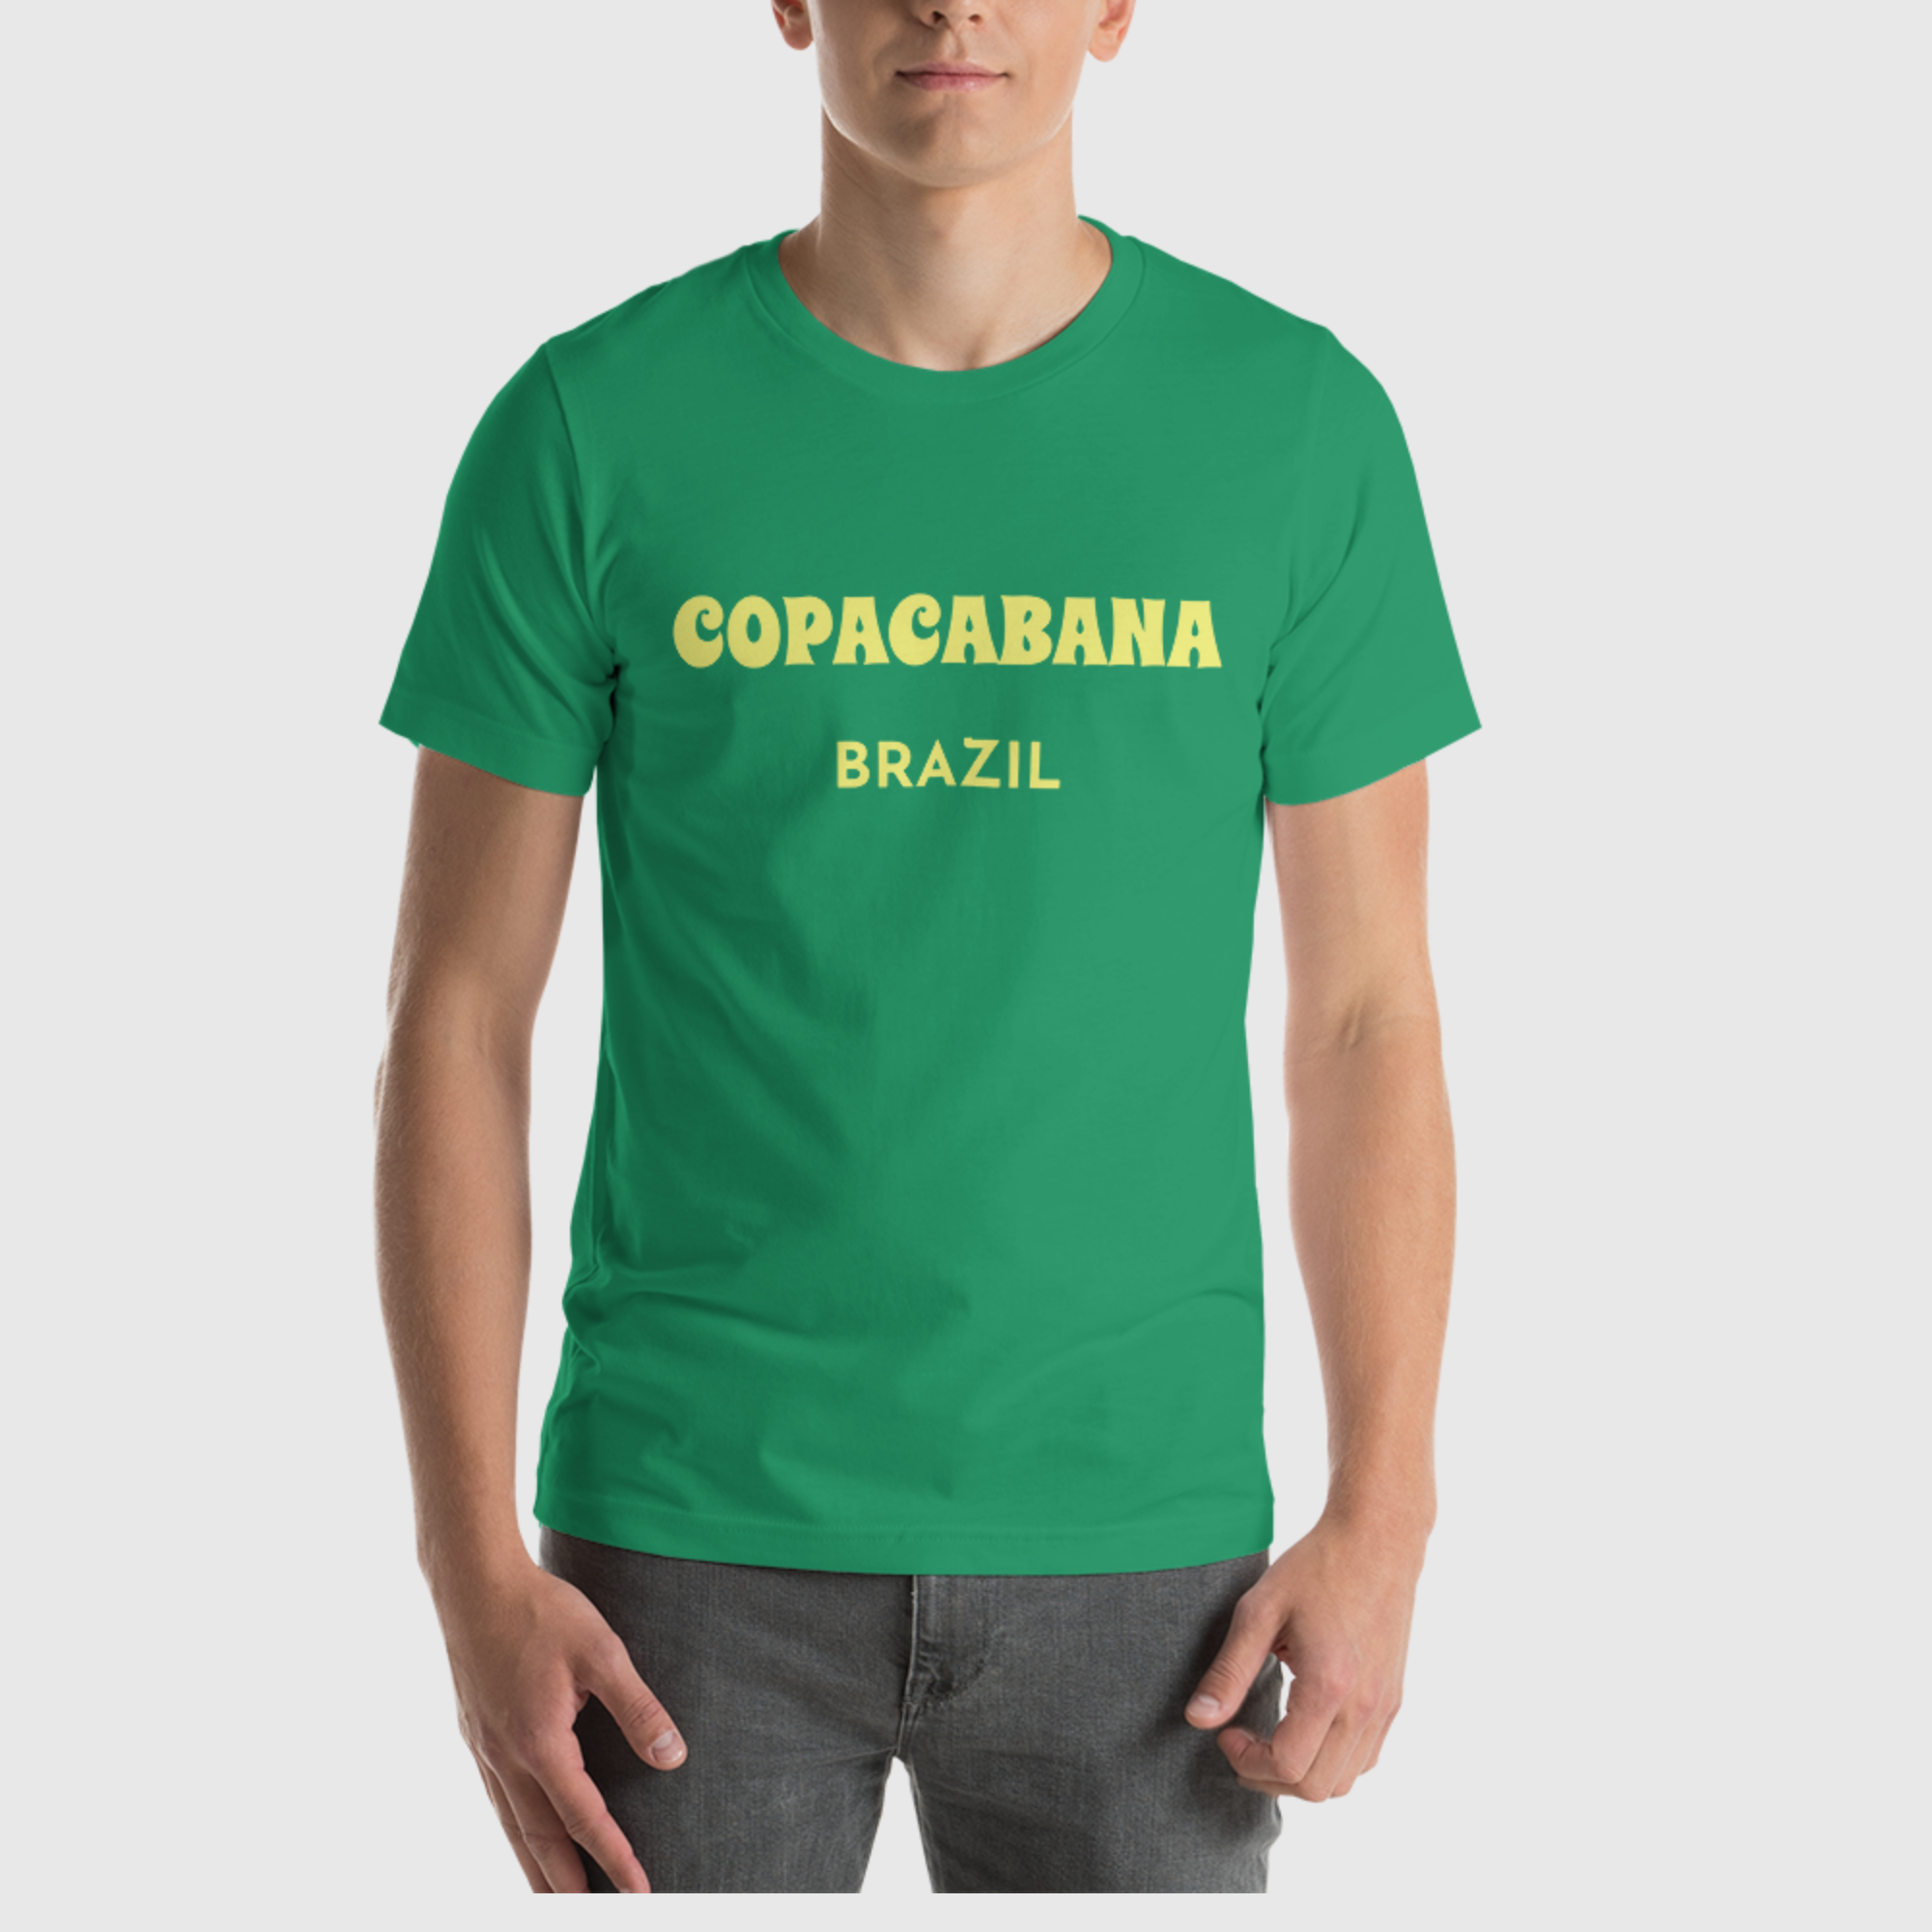 Camiseta unisex - Copacabana